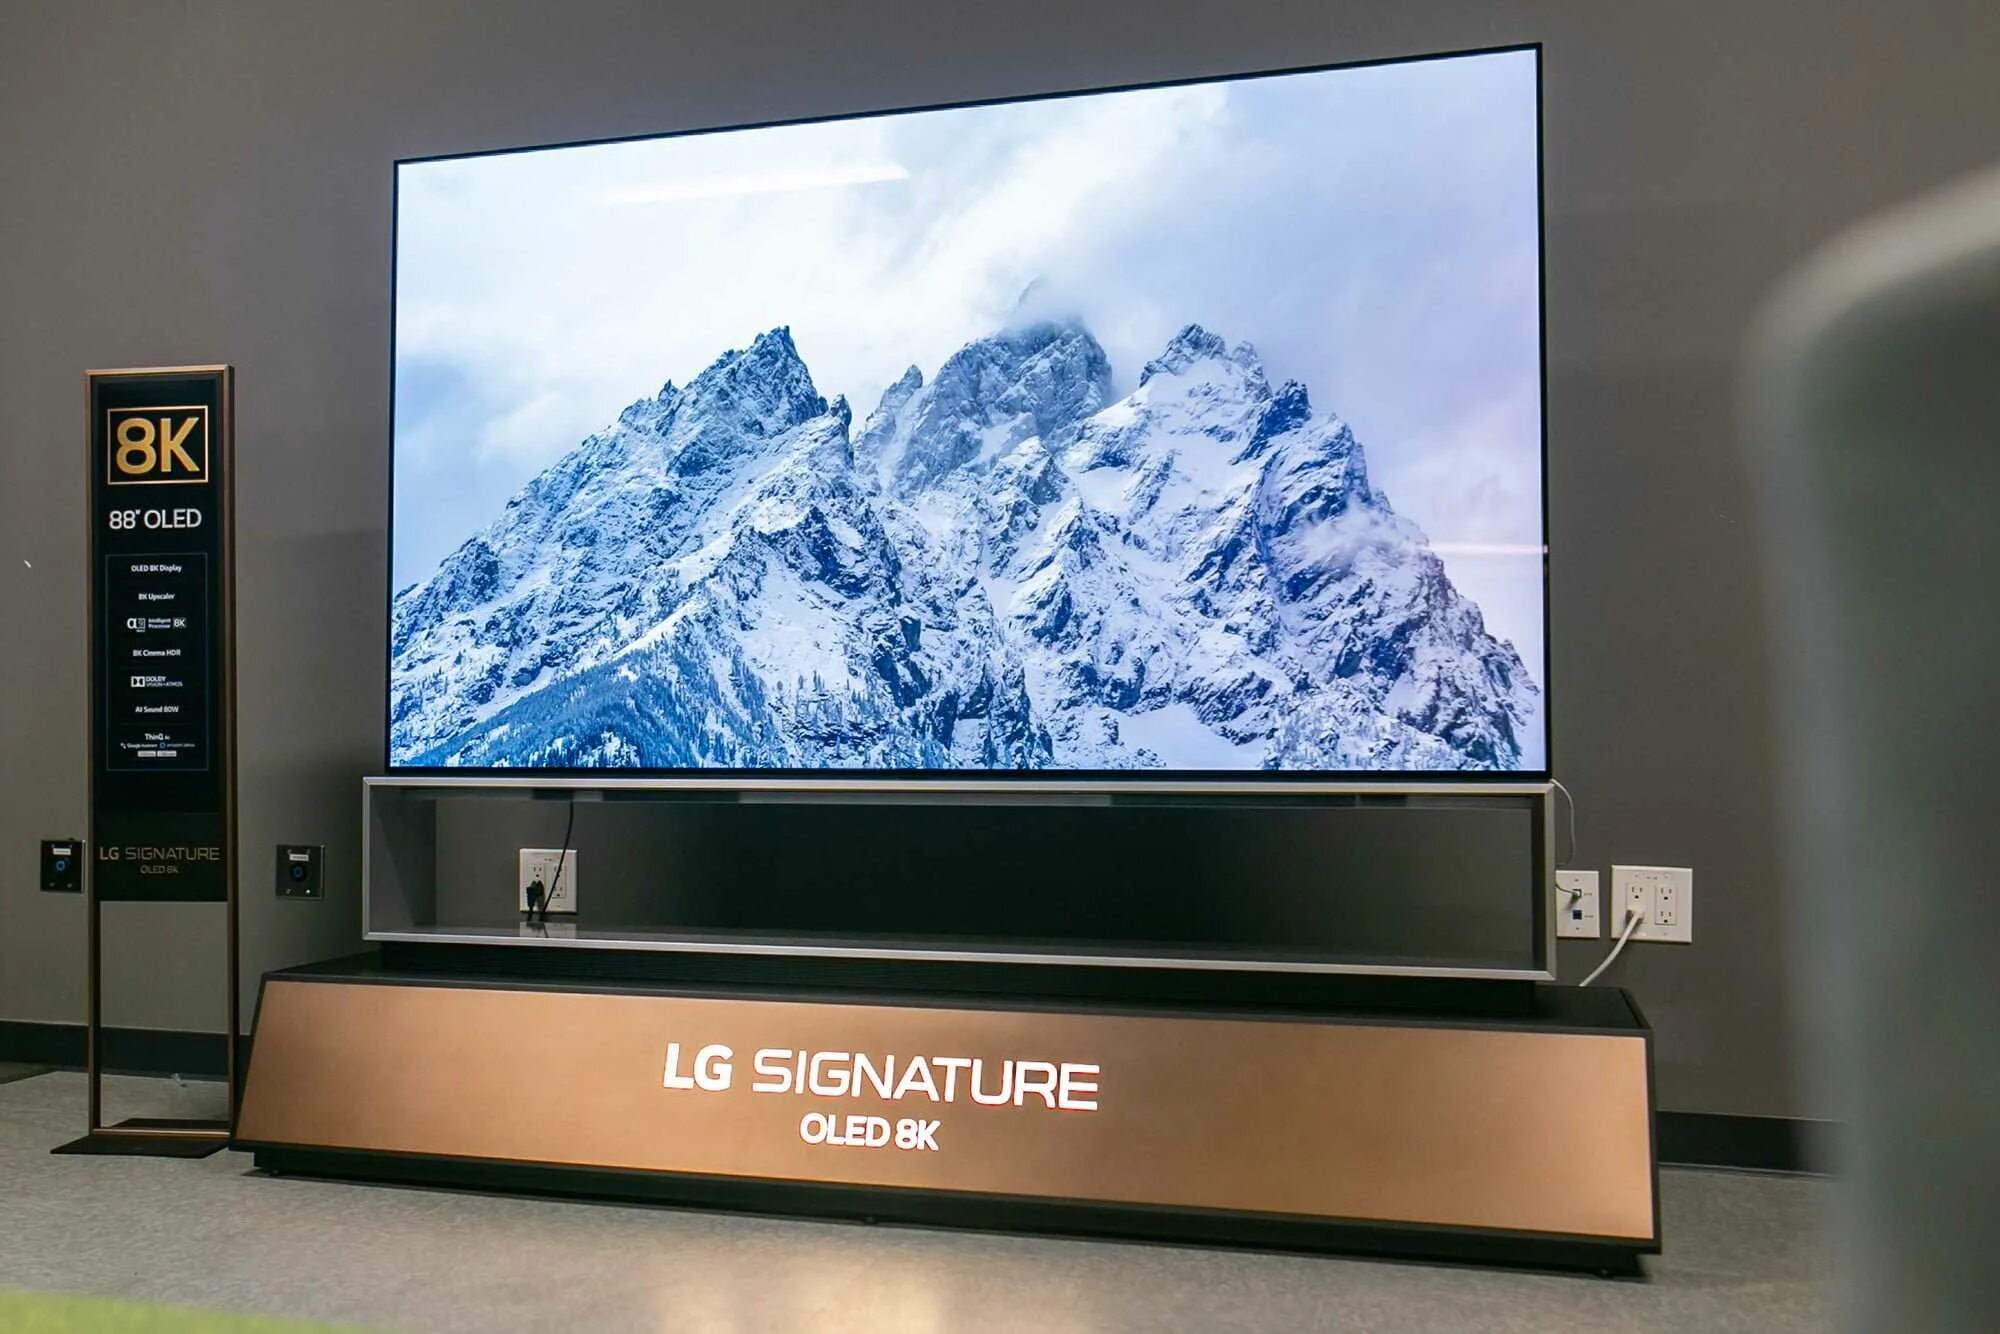 Покупка нового телевизора. LG Signature 88 8k OLED. LG oled88zx9. Телевизор LG Signature 88 дюймов. LG Signature 88 8k OLED телевизор.